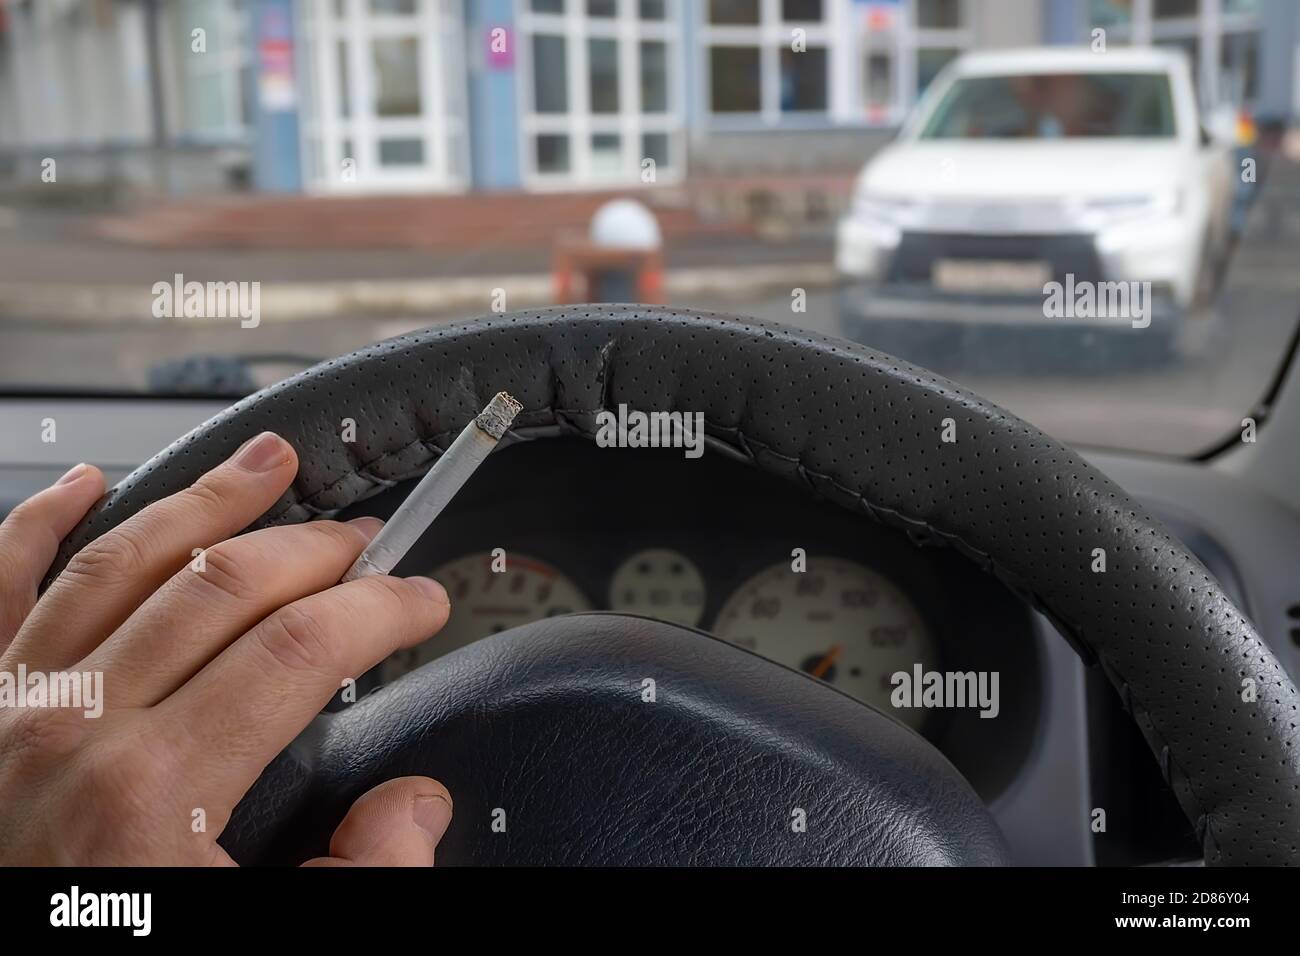 Fahrer Hand auf das Lenkrad des Autos, die eine Rauchen Zigarette hält, beobachten den Eingang zum Gebäude Stockfoto